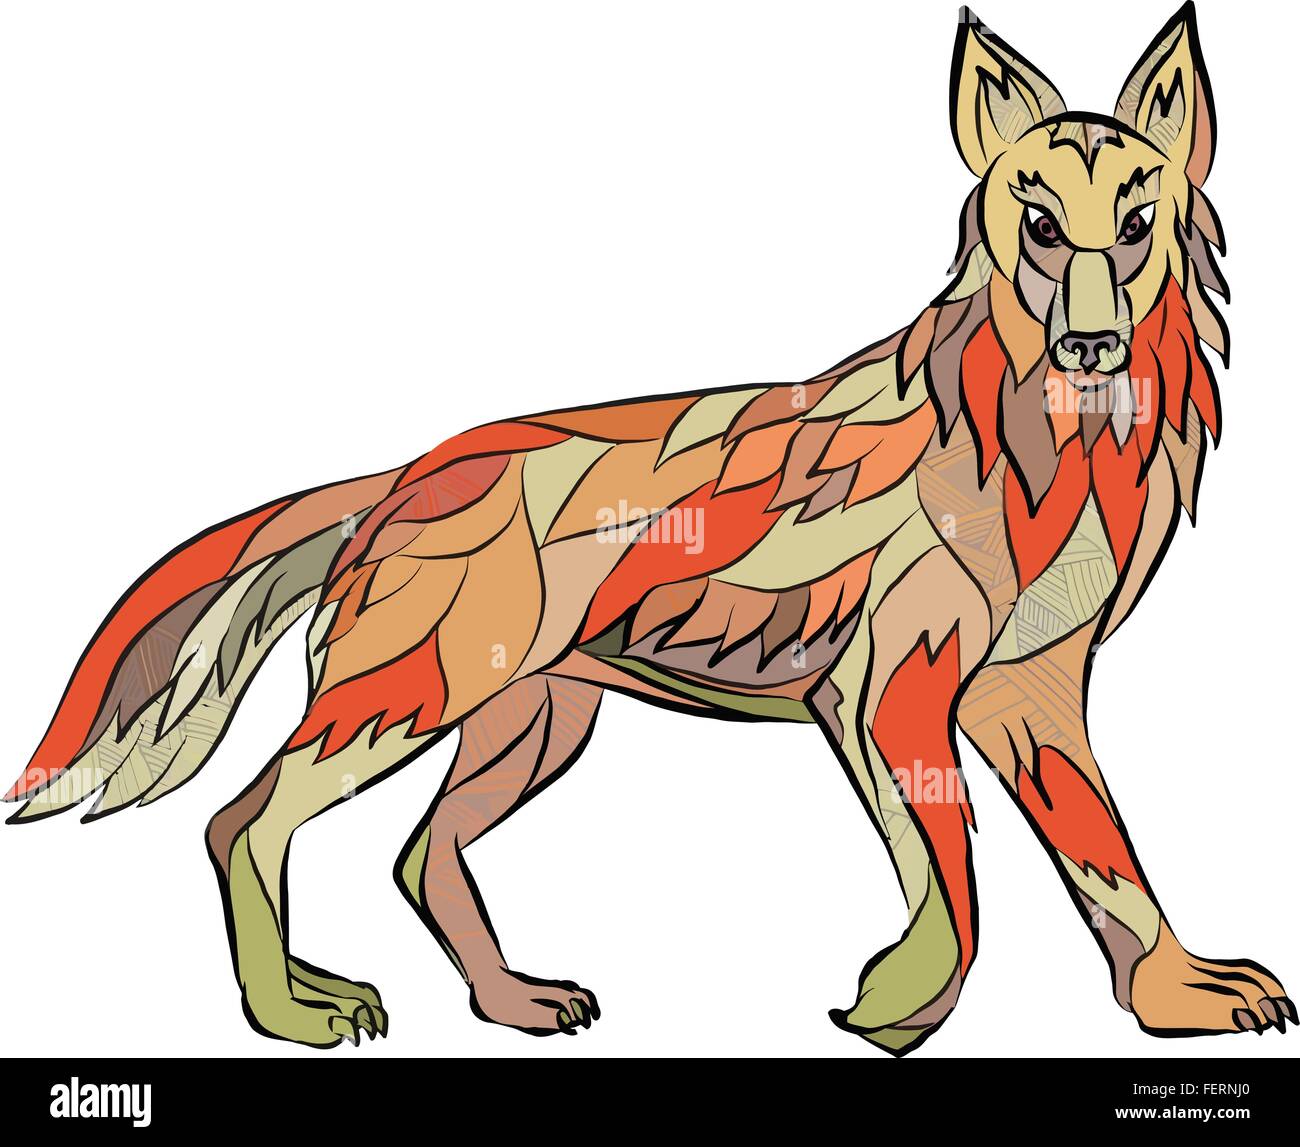 Style croquis dessin illustration d'un chien sauvage coyote vu de côté face à l'avant fixé sur un fond blanc. Illustration de Vecteur